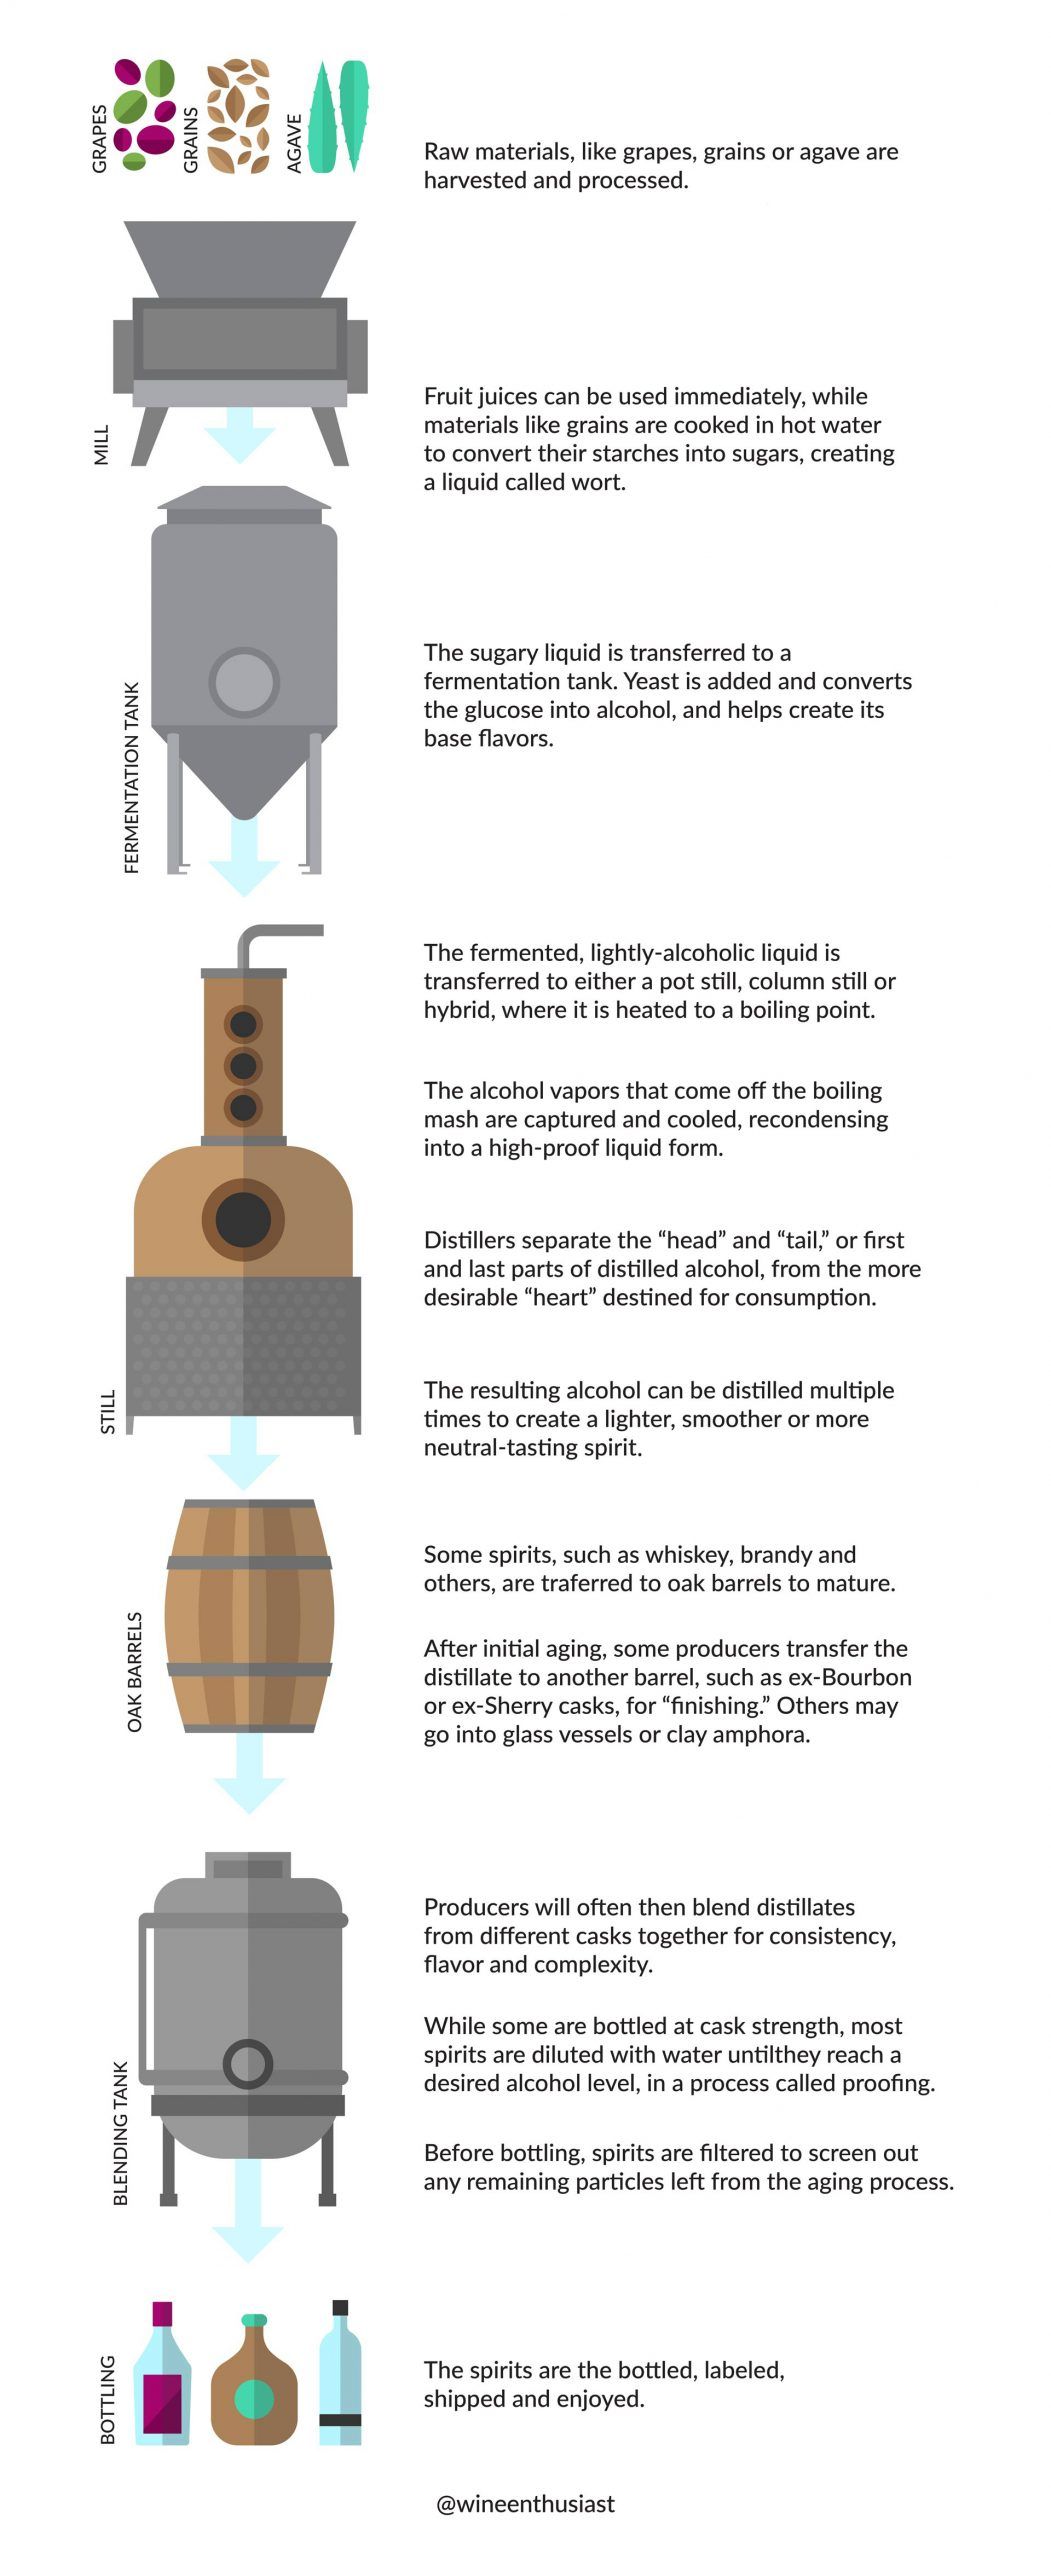 Ilustraciones y texto que resumen el proceso de destilación.